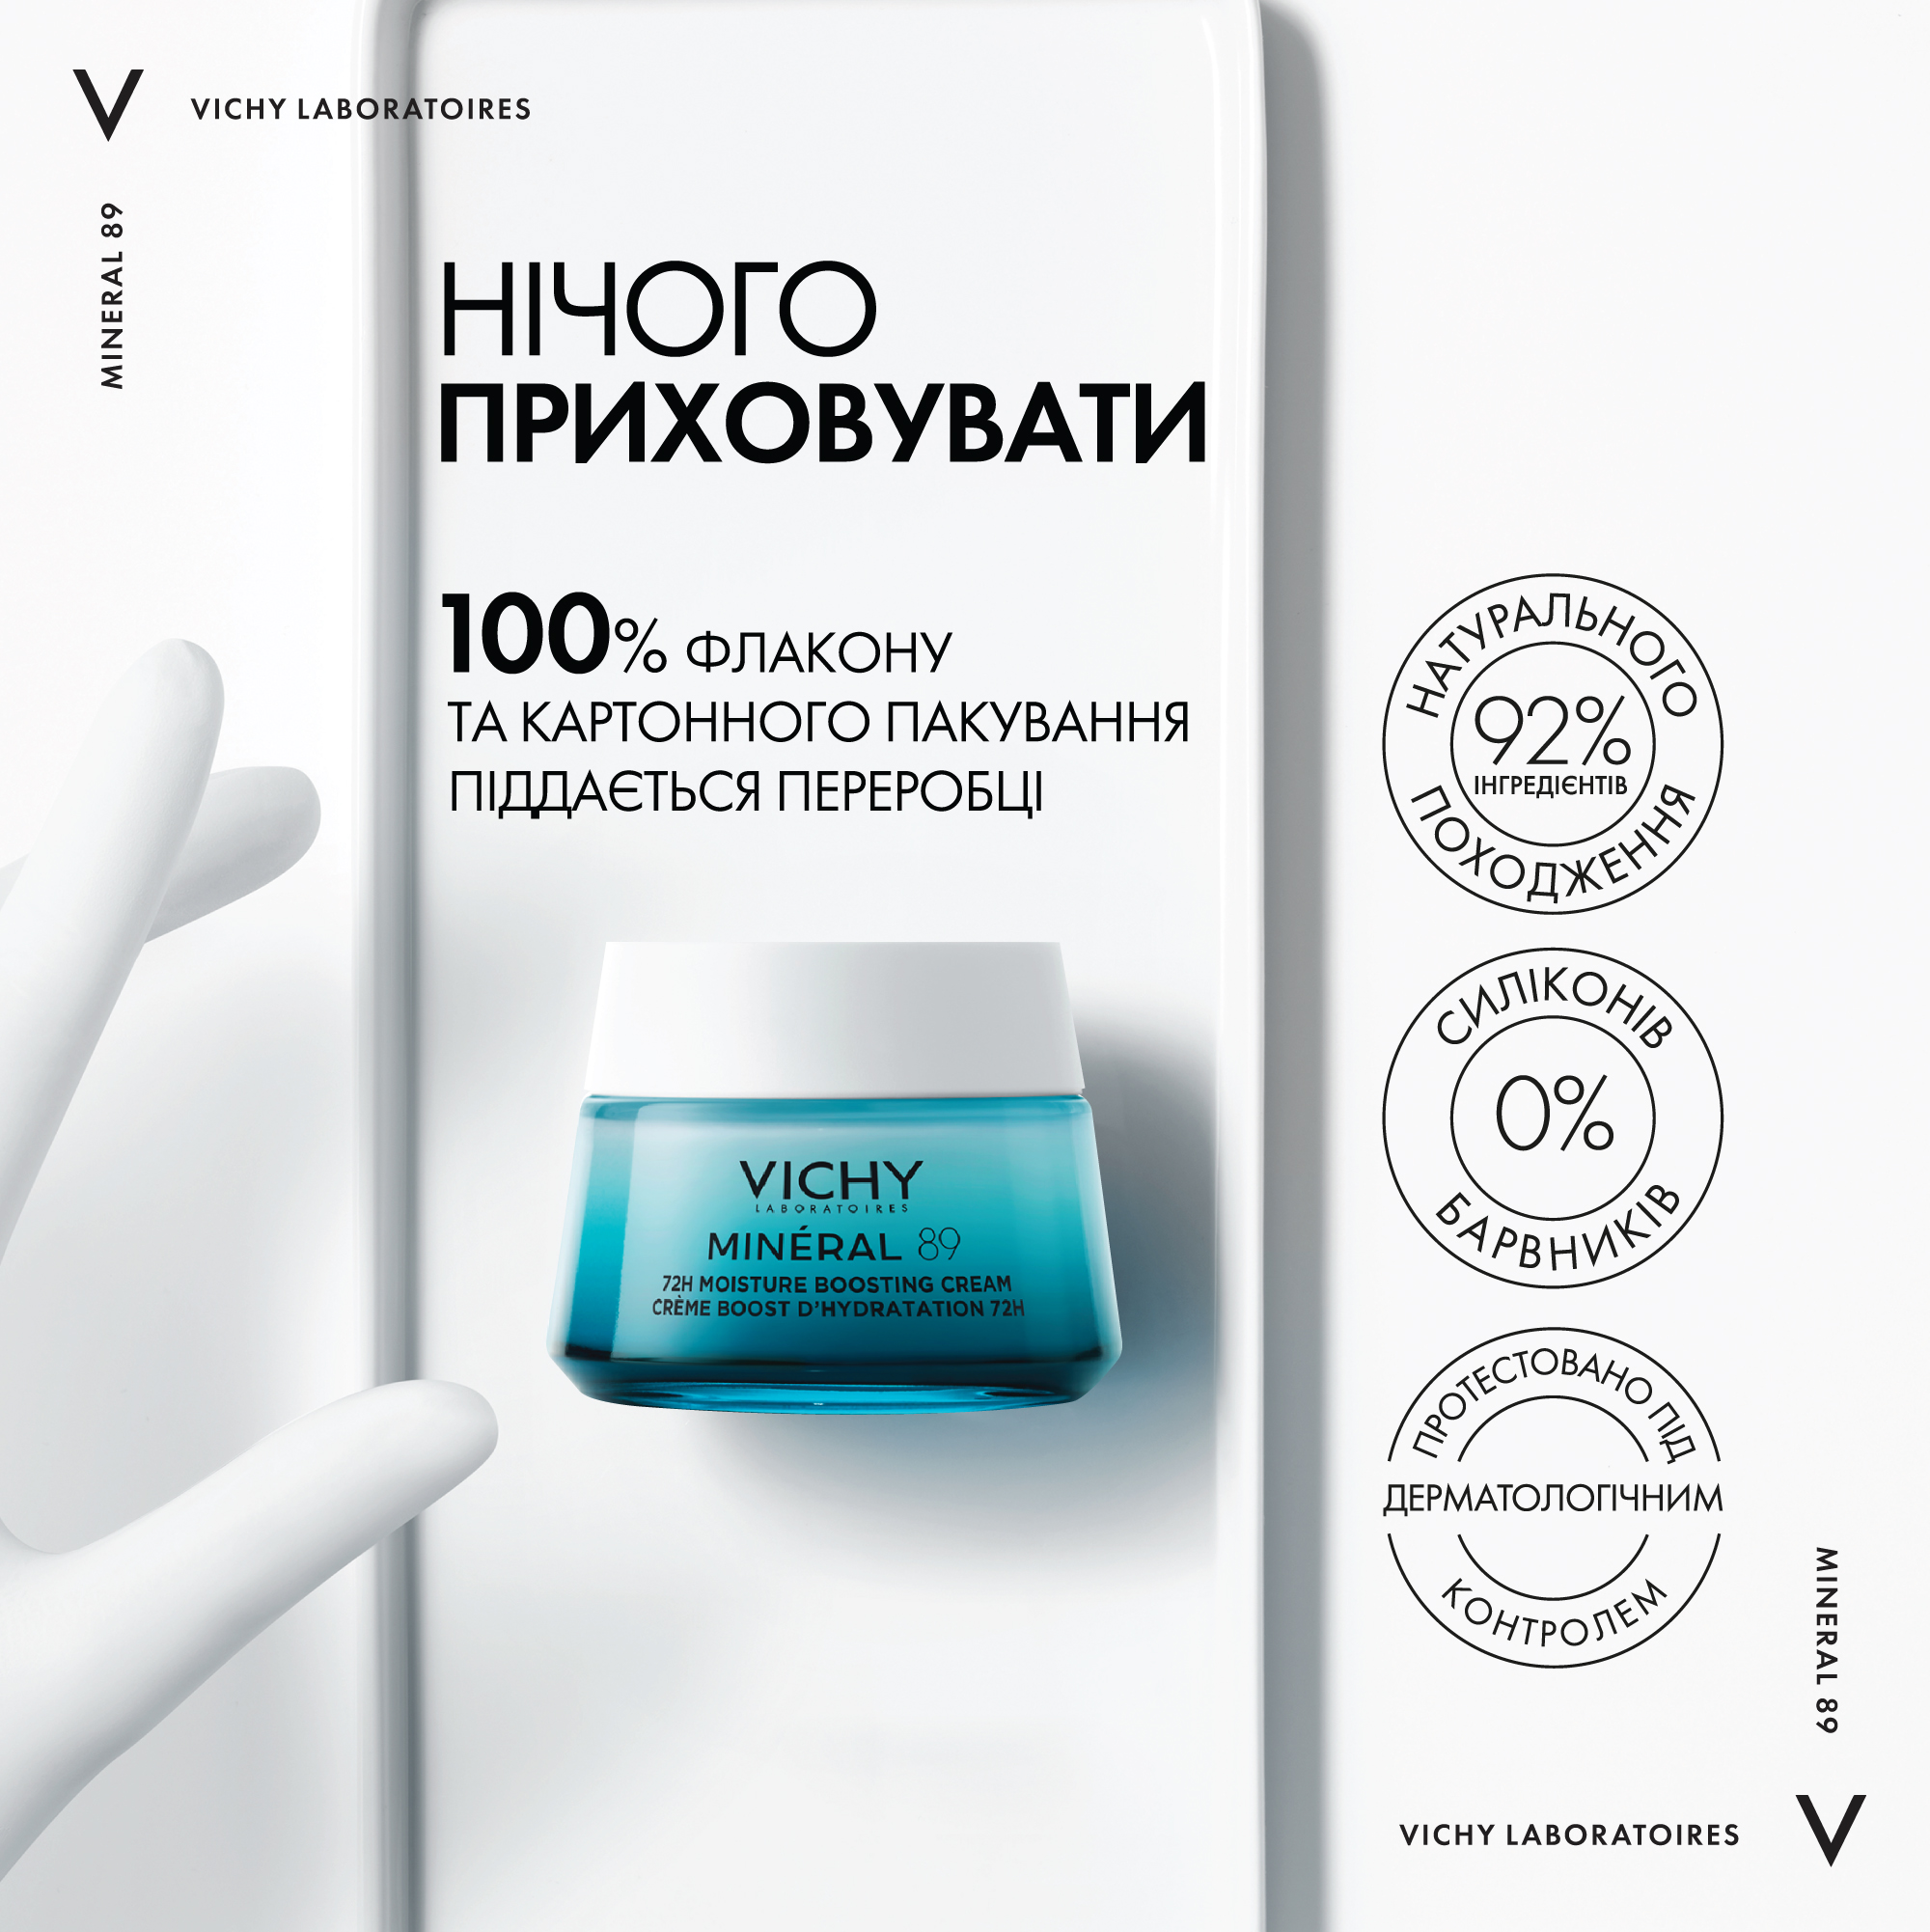 Легкий крем для всіх типів шкіри обличчя Vichy Mineral 89 Light 72H Moisture Boosting Cream, 50 мл - фото 5